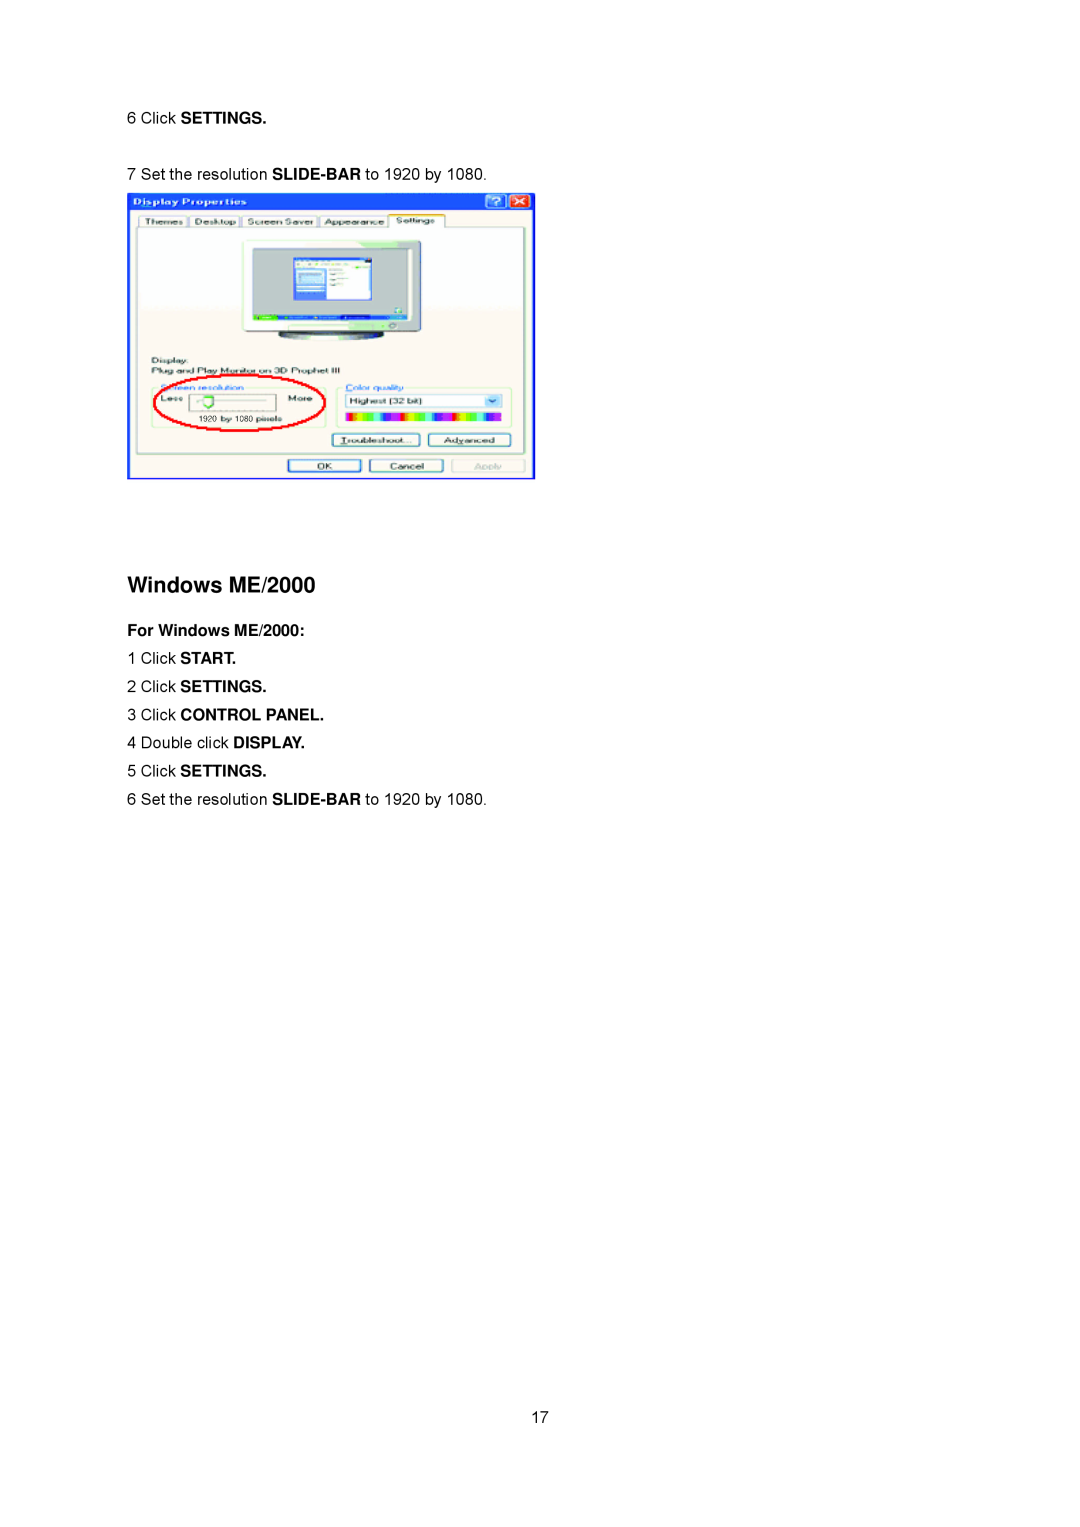 AOC E2437Fh manual For Windows ME/2000, Click SETTINGS 3 Click CONTROL PANEL 